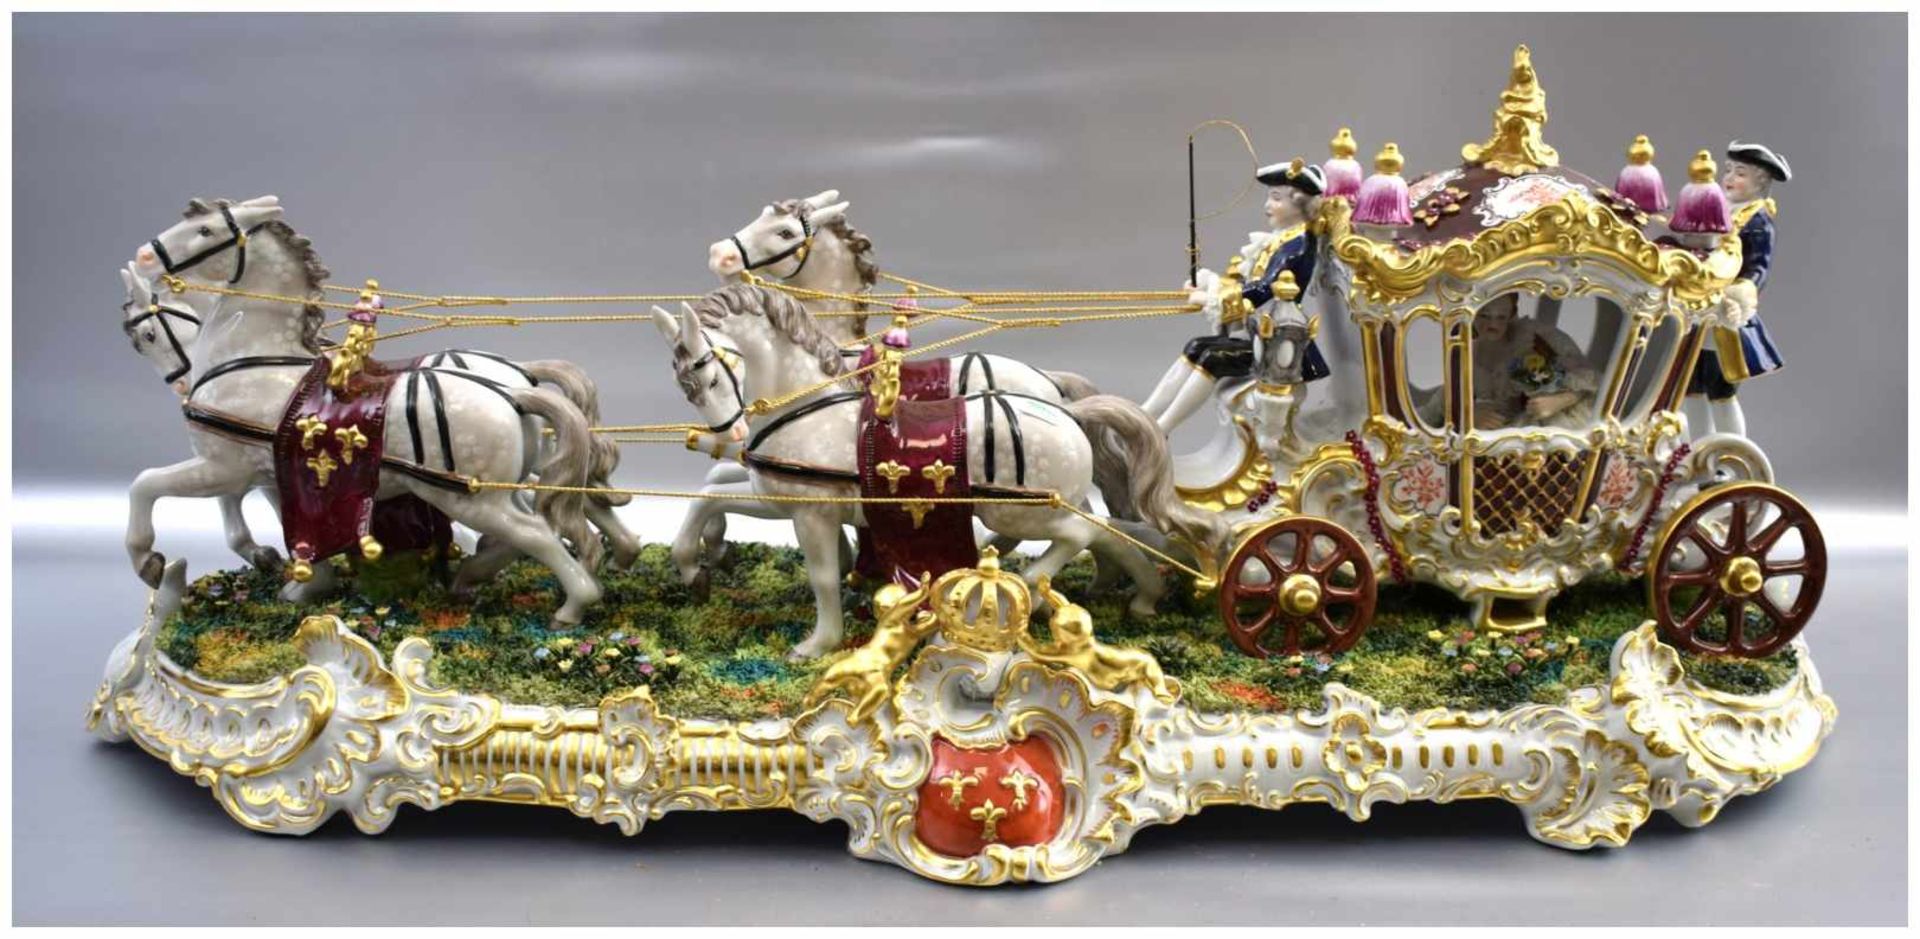 Prunk-Pferdekutsche vierspännig, vier Schimmel, in der Kutsche elegante Dame mit Blumen, begleitet